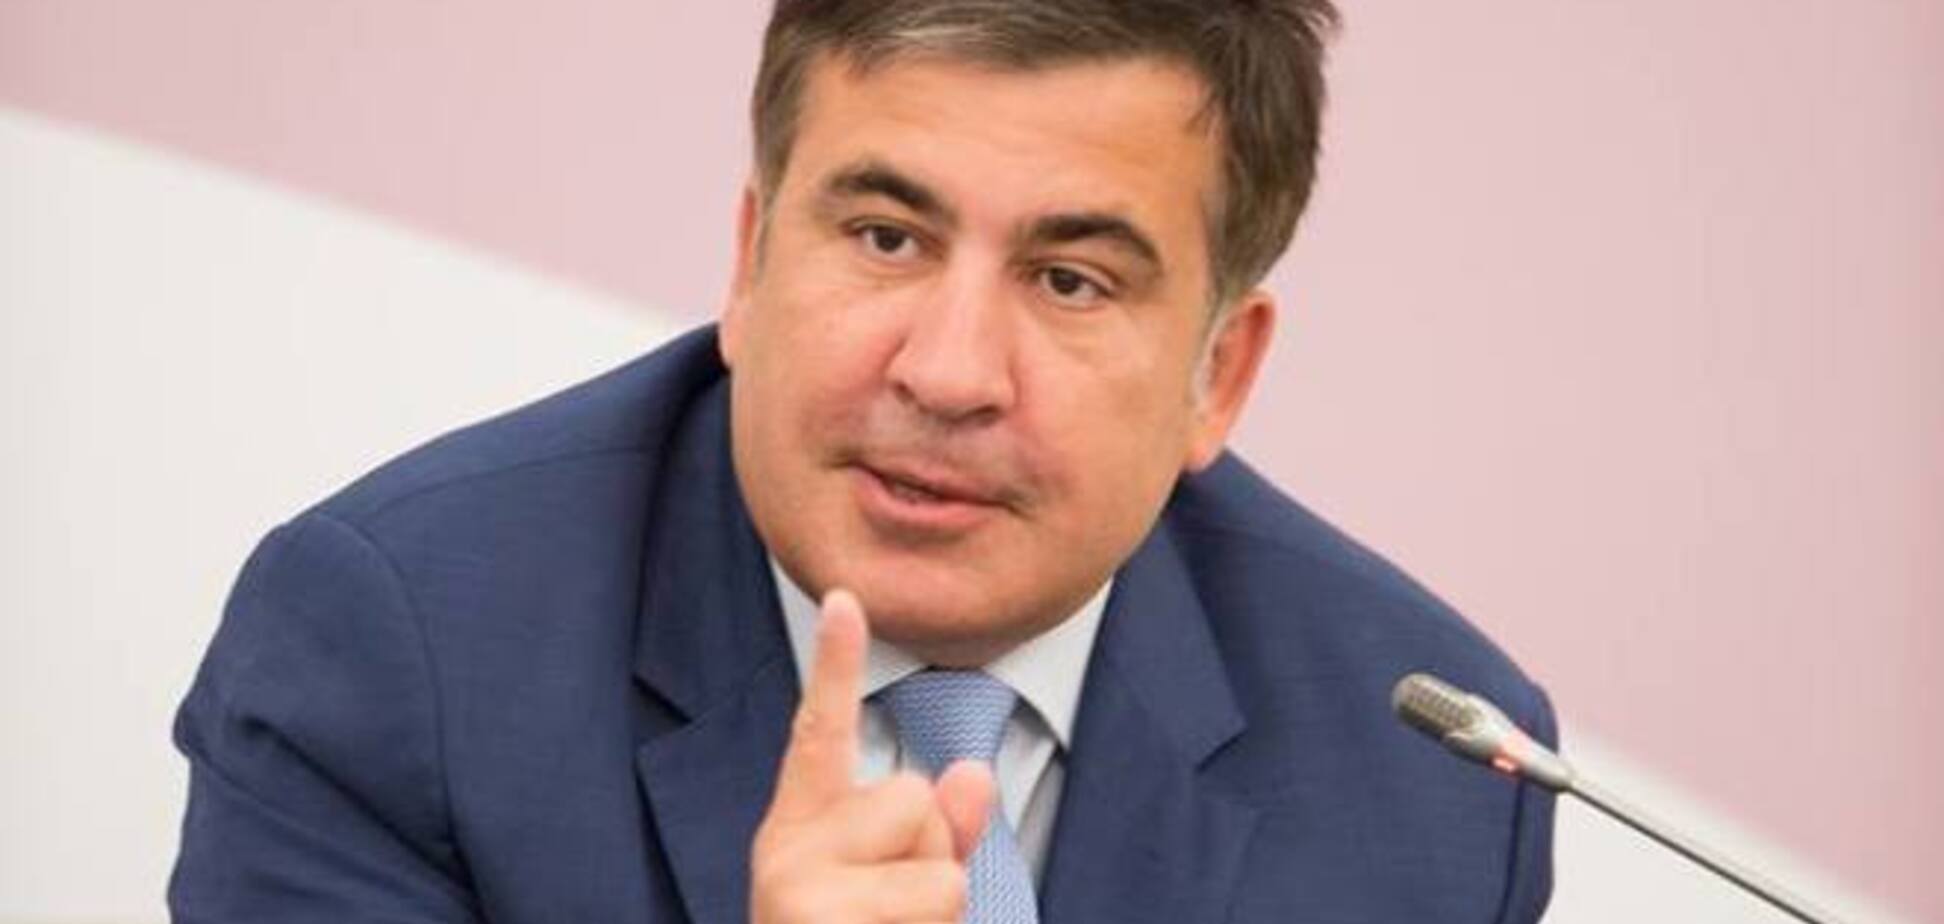 Саакашвили вернул правительству купленный за бюджетные деньги гардероб